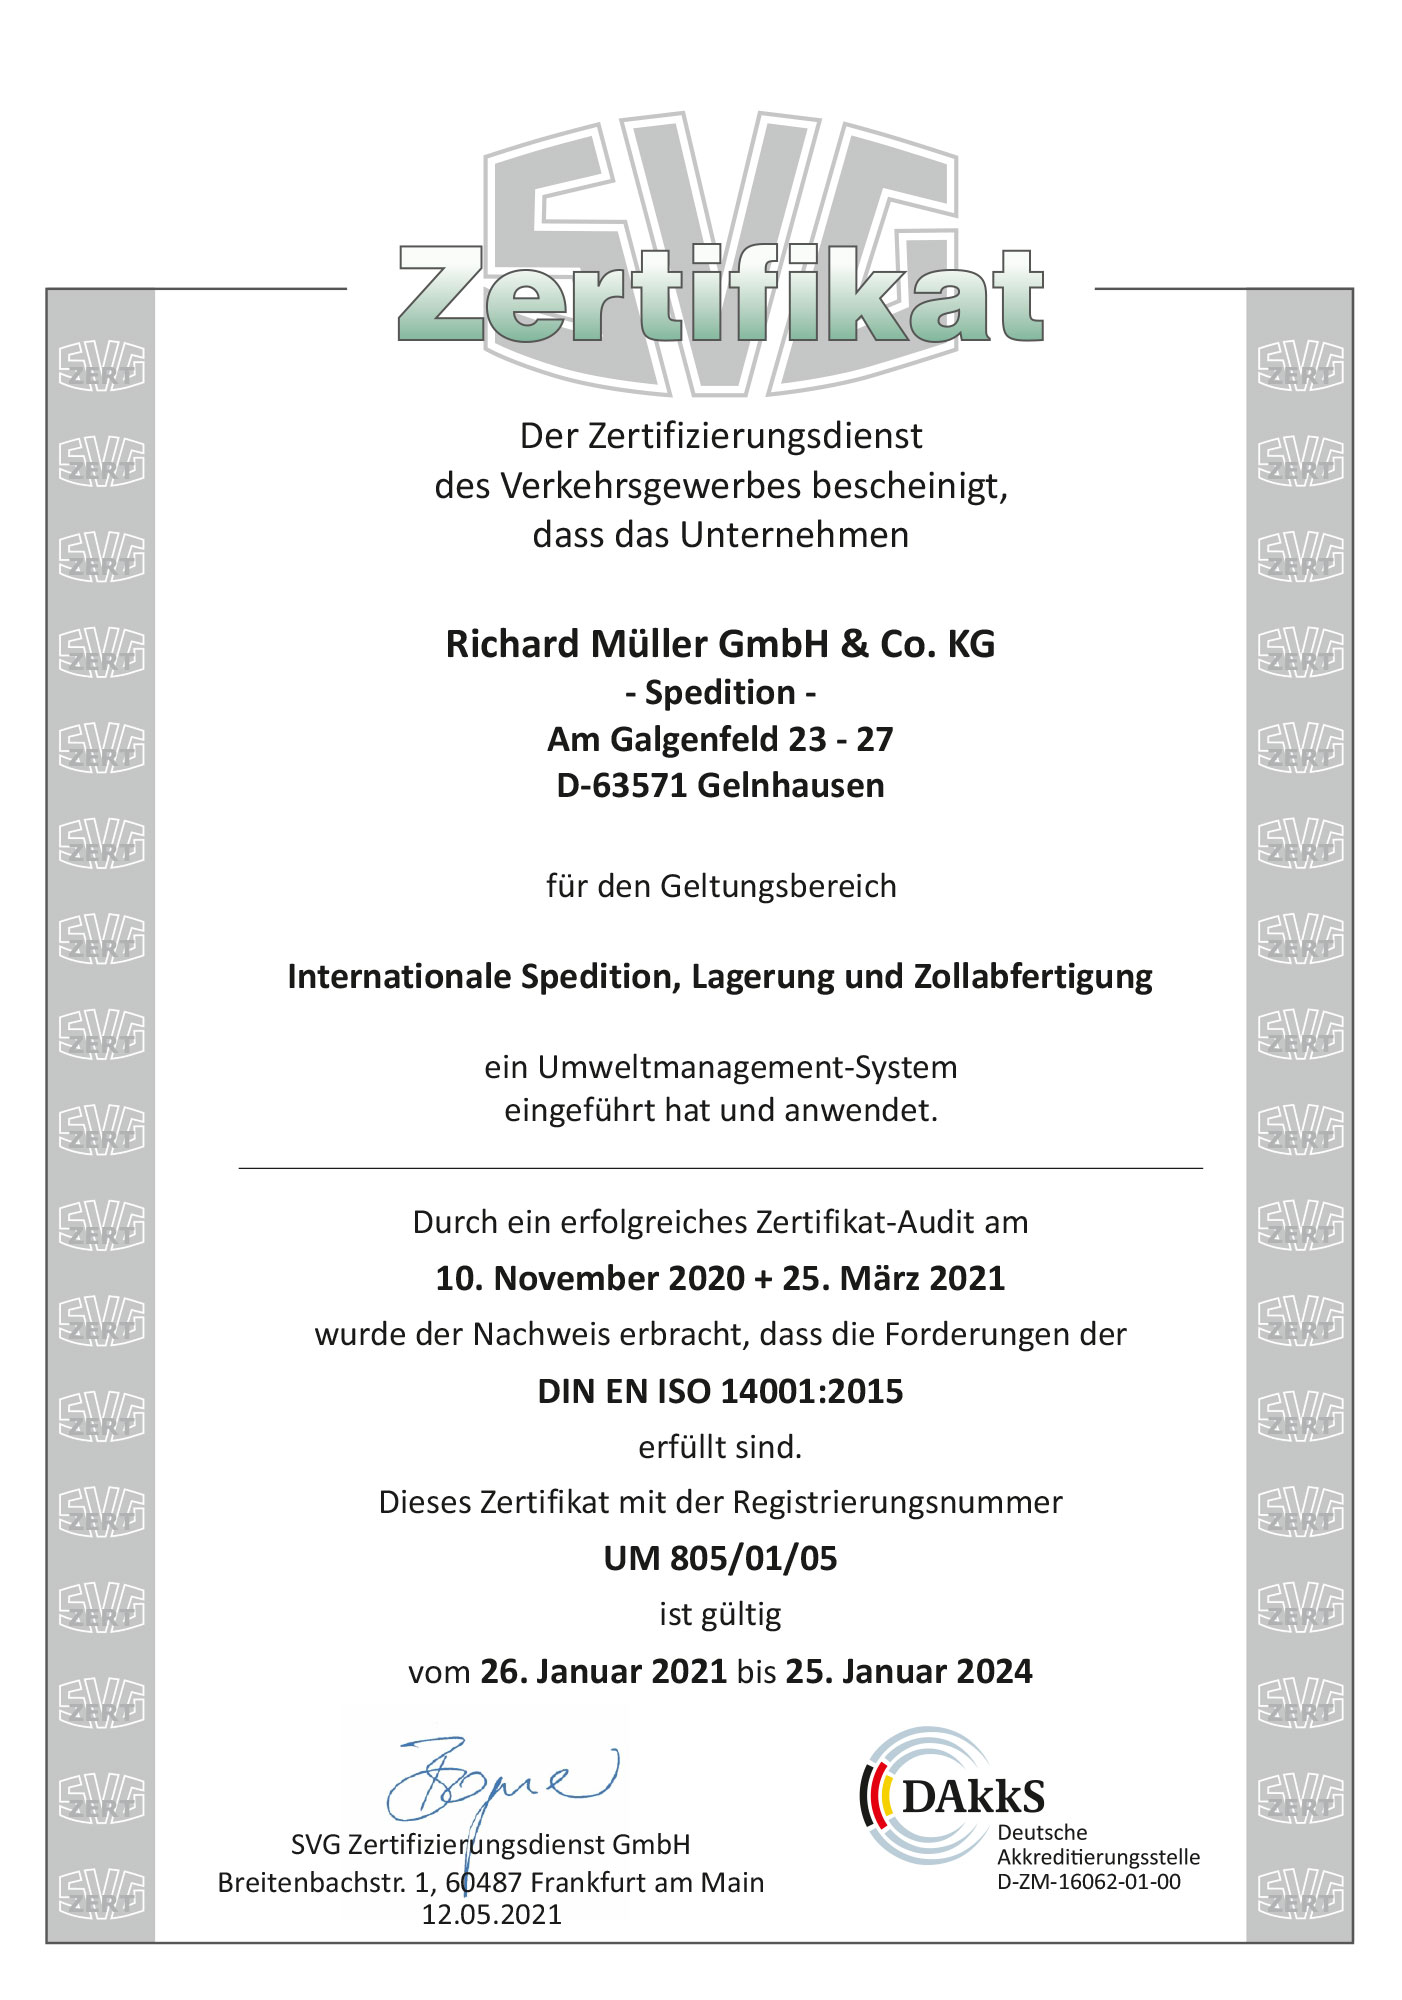 SVG Zertifikat DIN EN ISO 14001